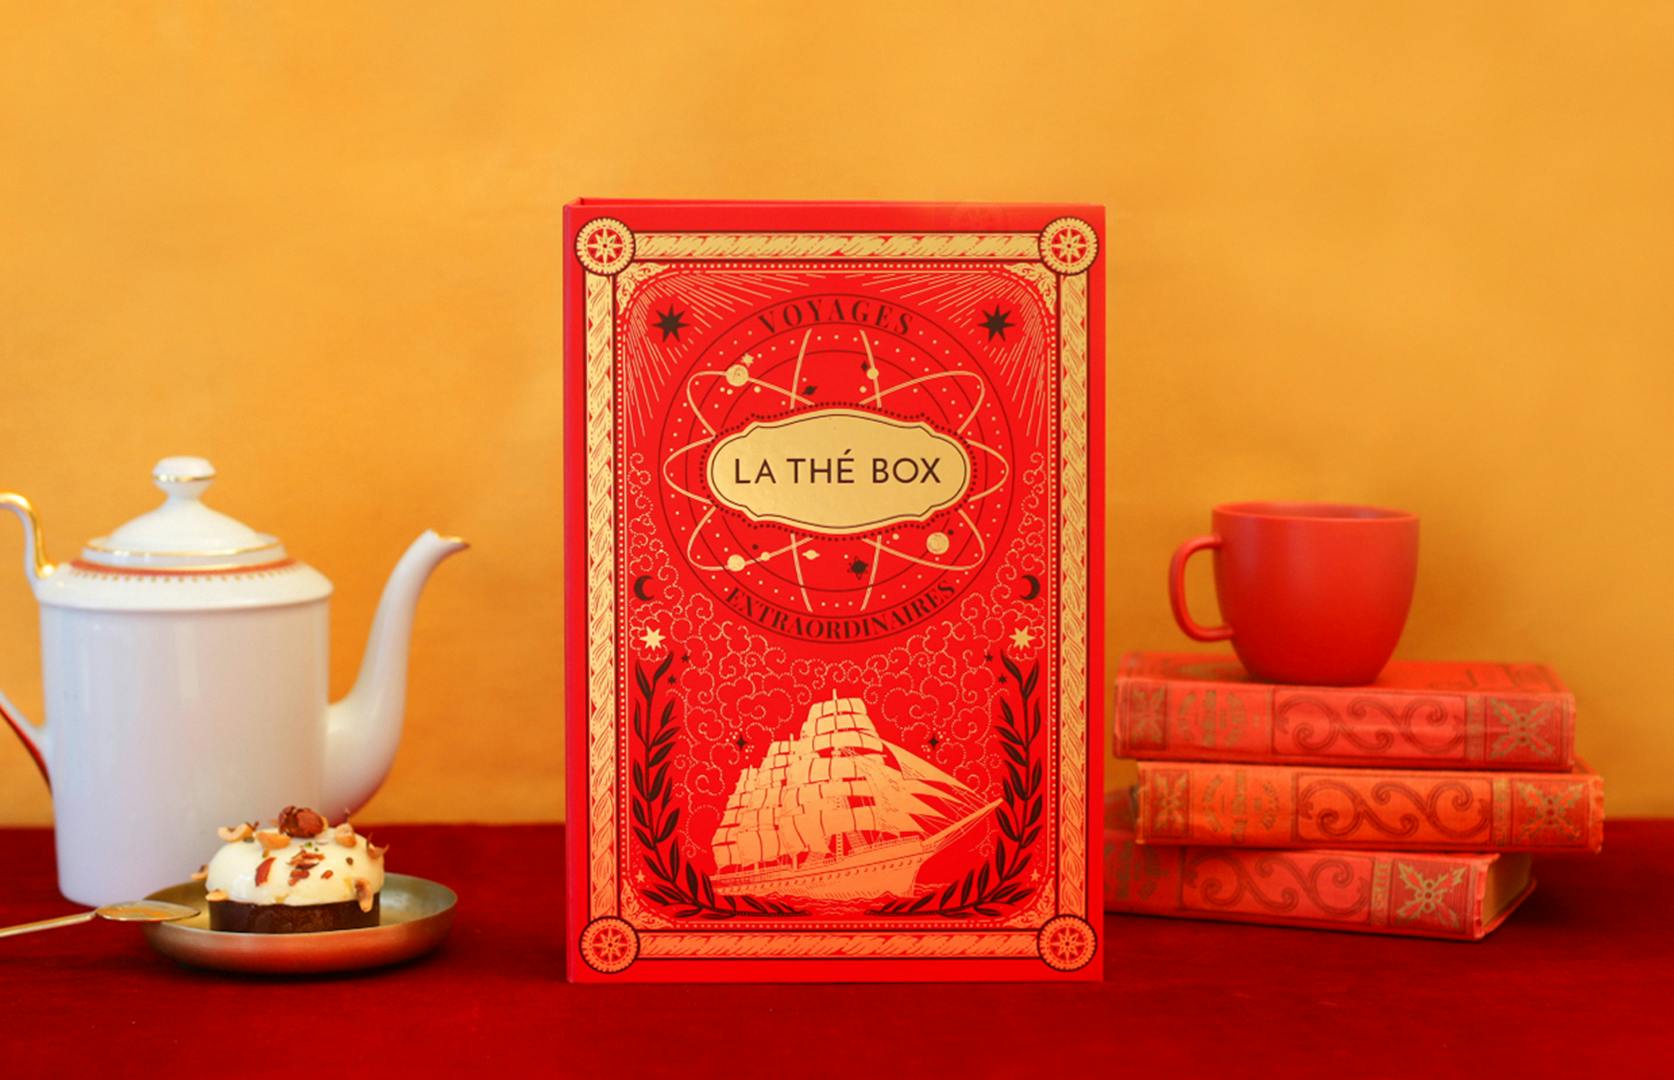 Le salon de thé avec la thébox Jules Verne 